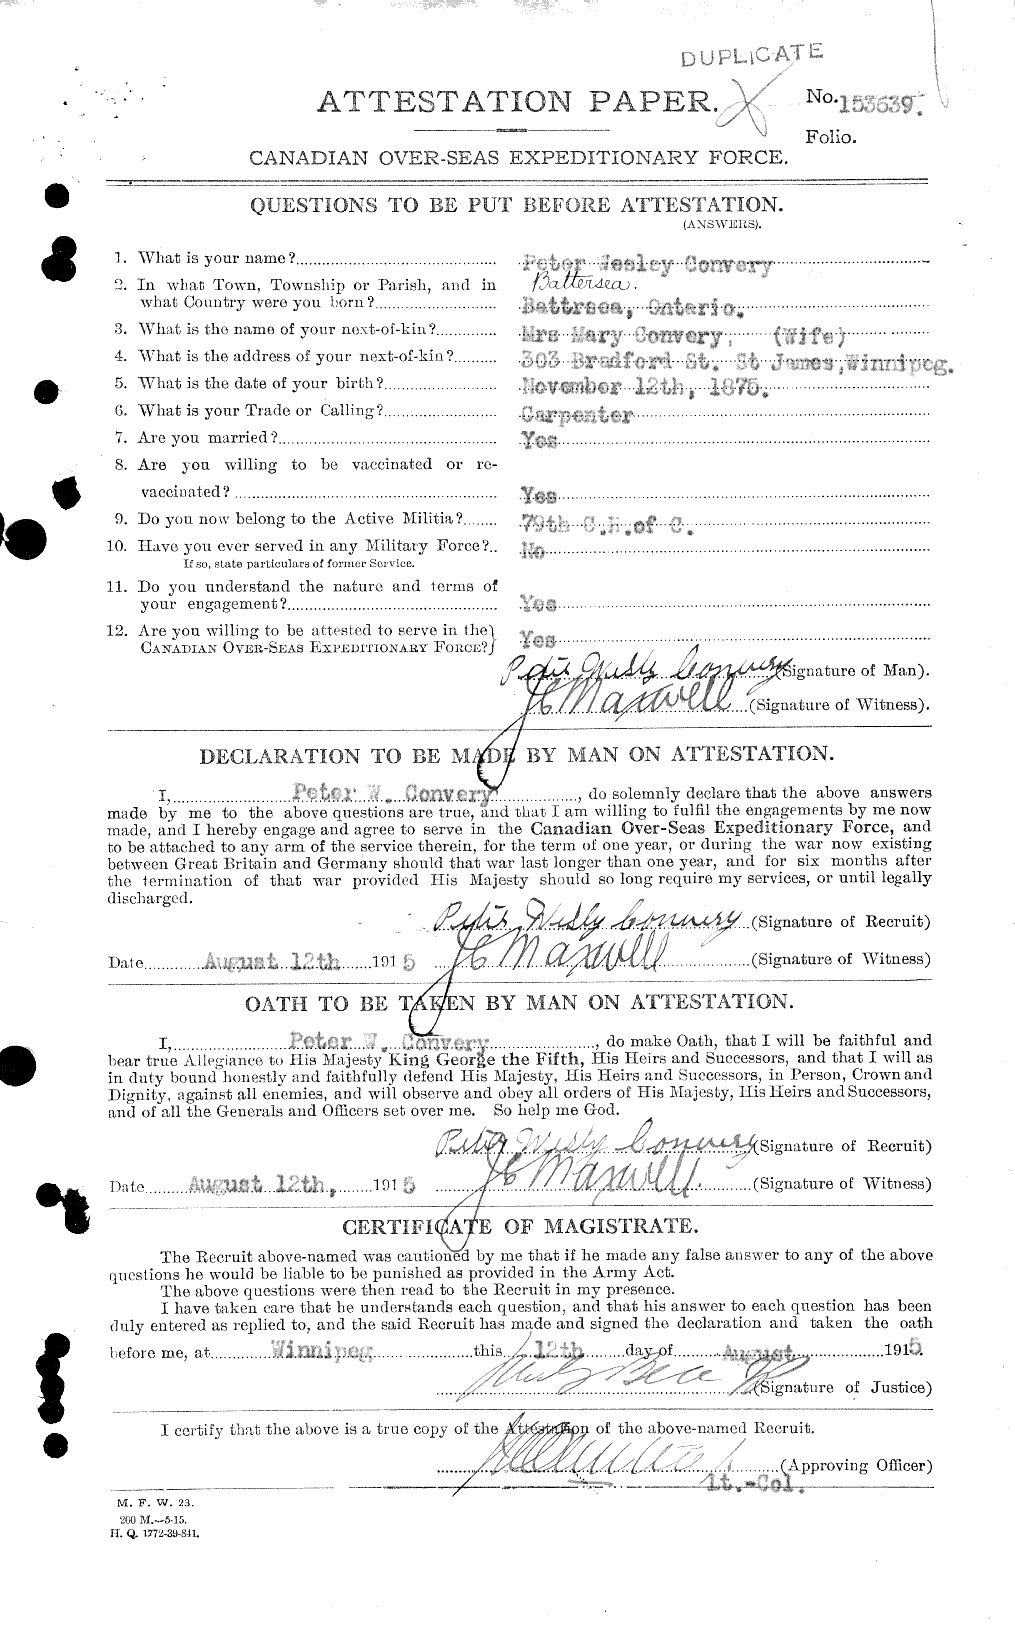 Dossiers du Personnel de la Première Guerre mondiale - CEC 034786a